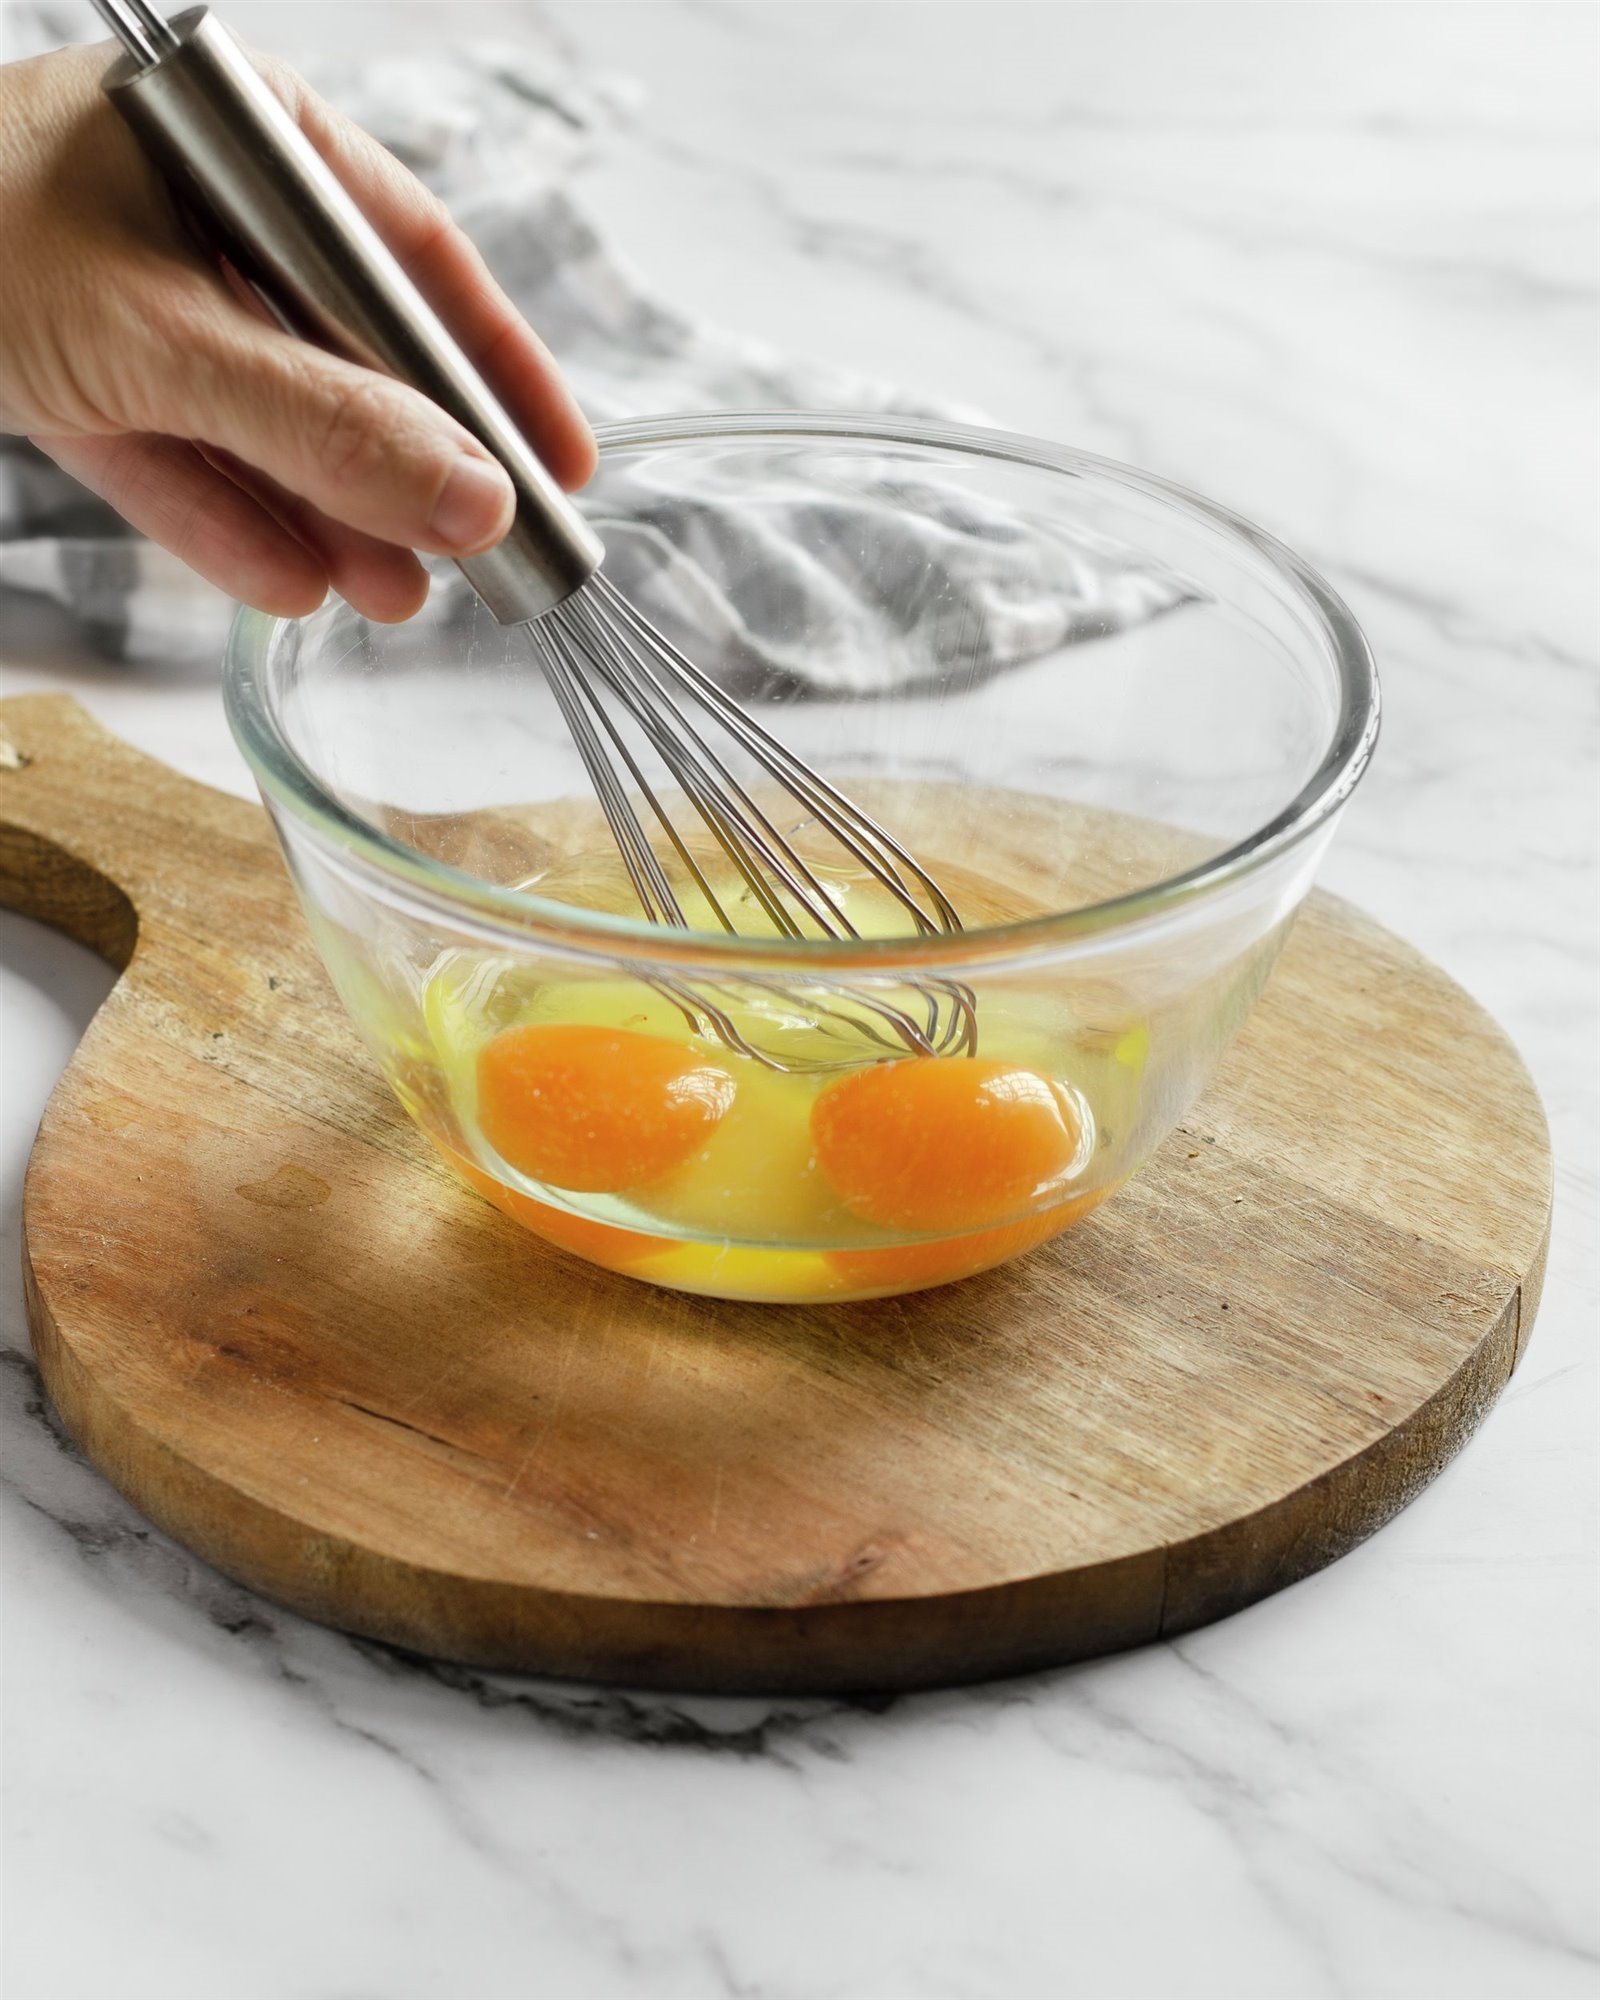 3. Bate los huevos y reboza